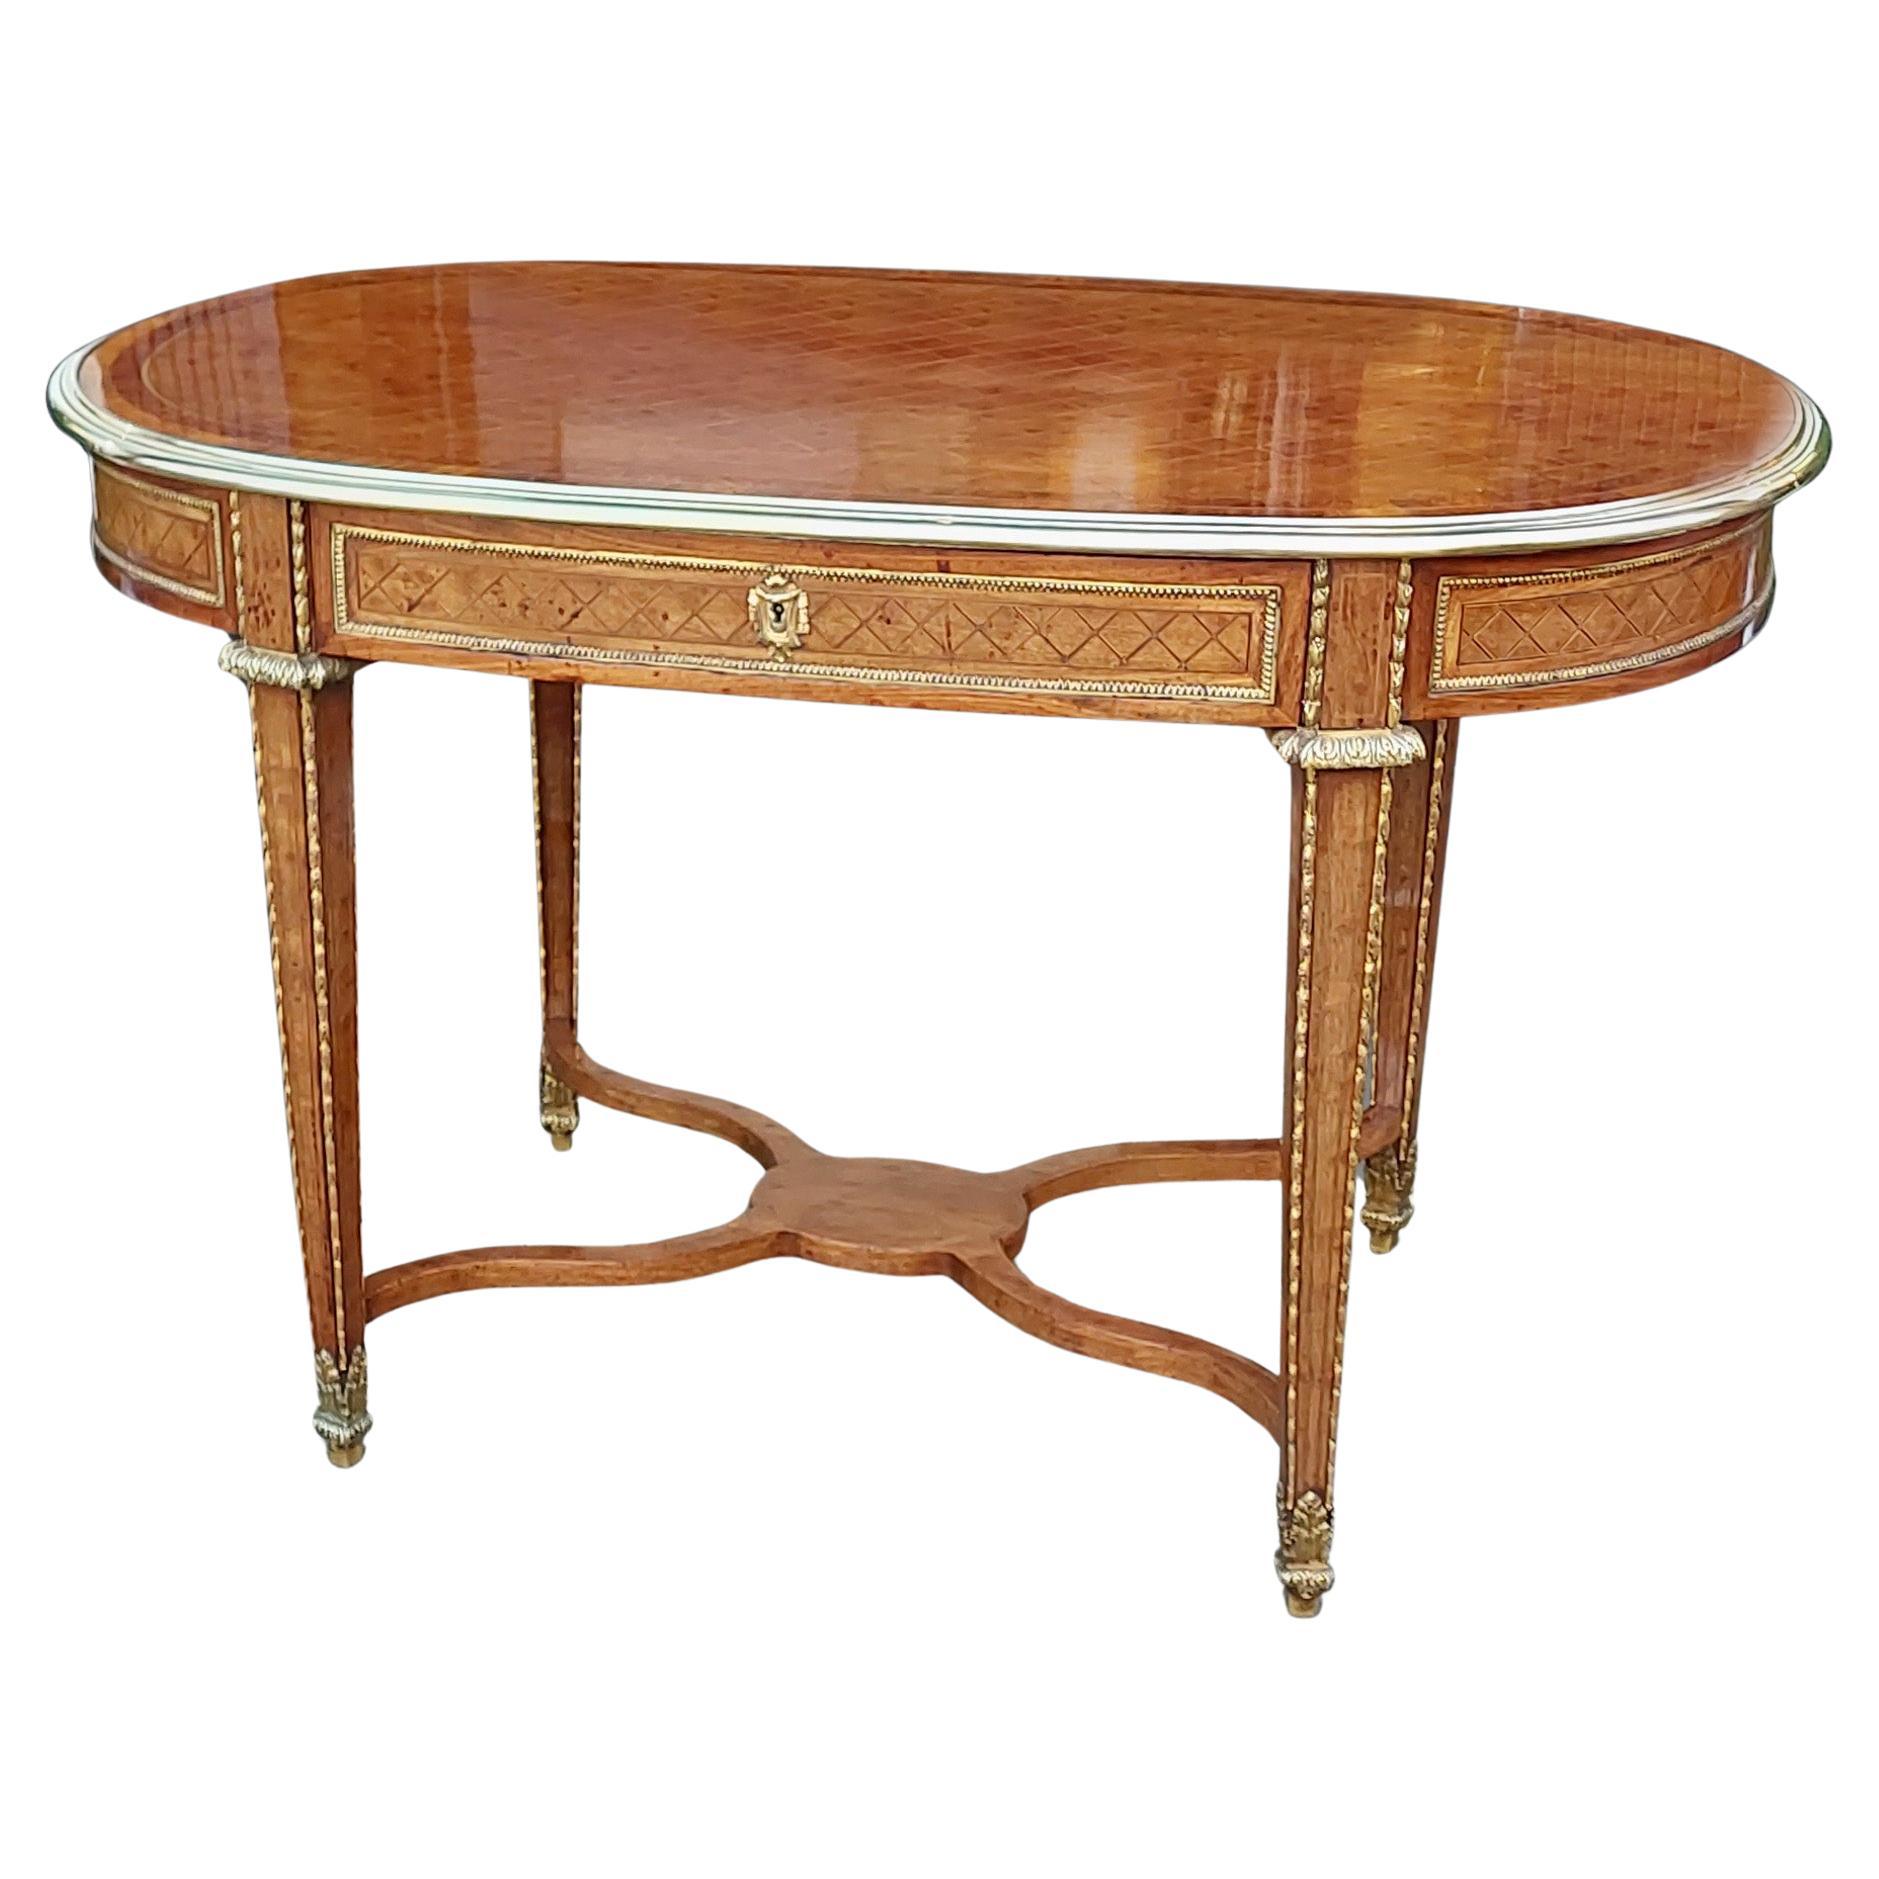 Loius XVI Style Inlaid Center Table